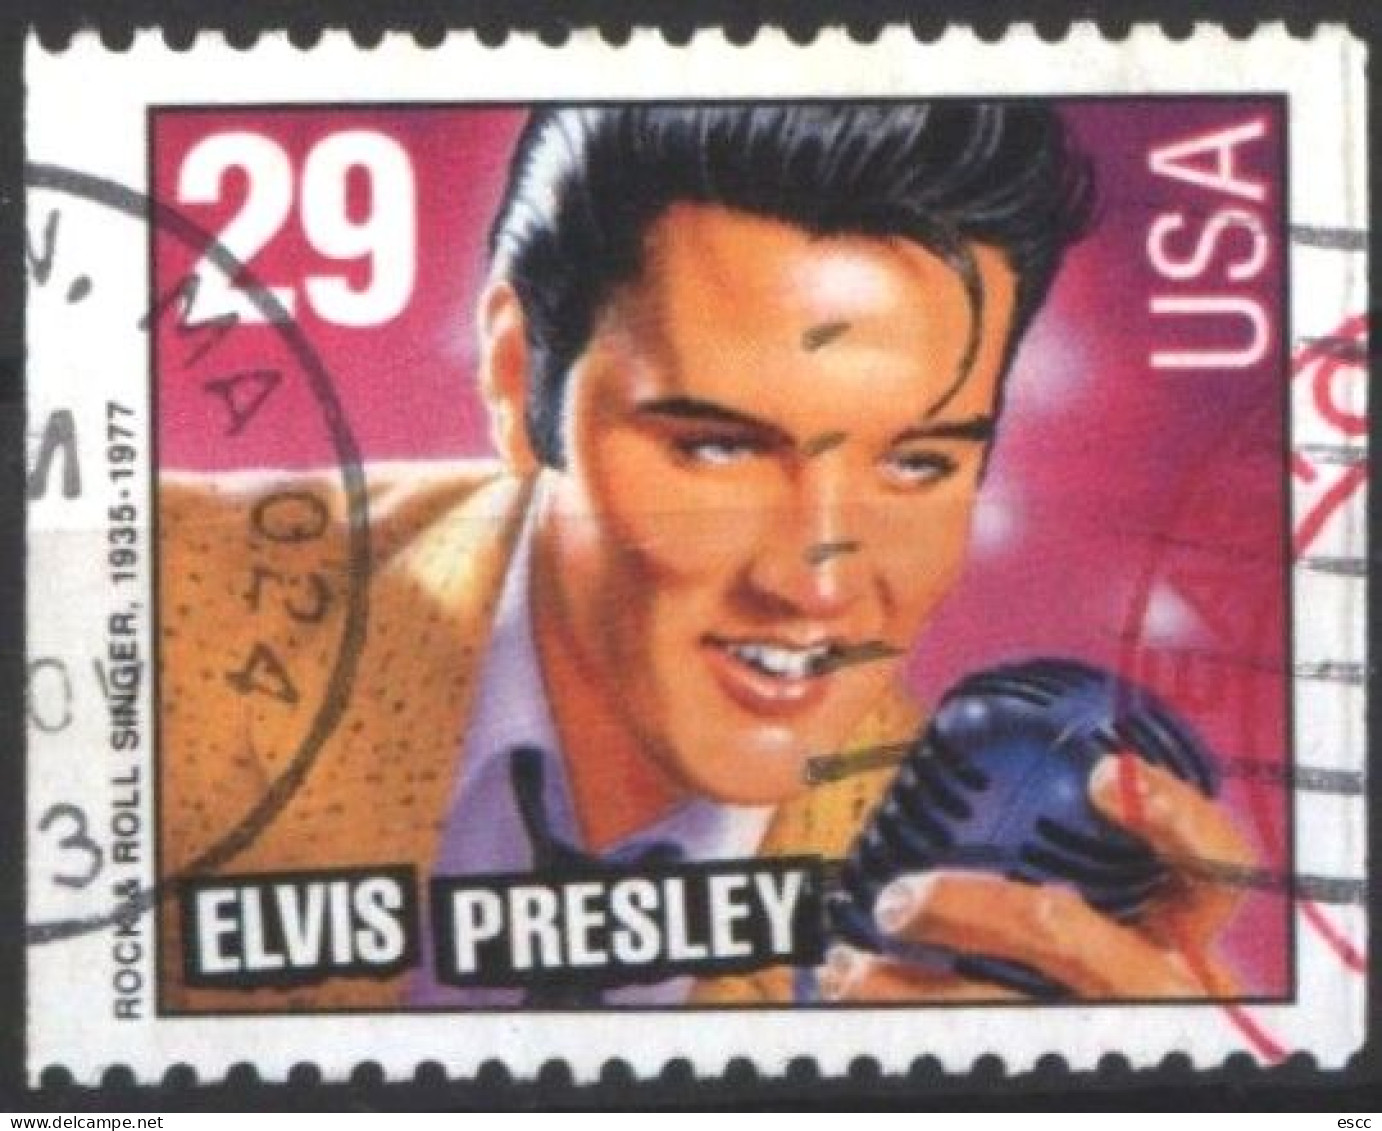 Used Stamp Elvis Presley 1993   From US  USA - Elvis Presley